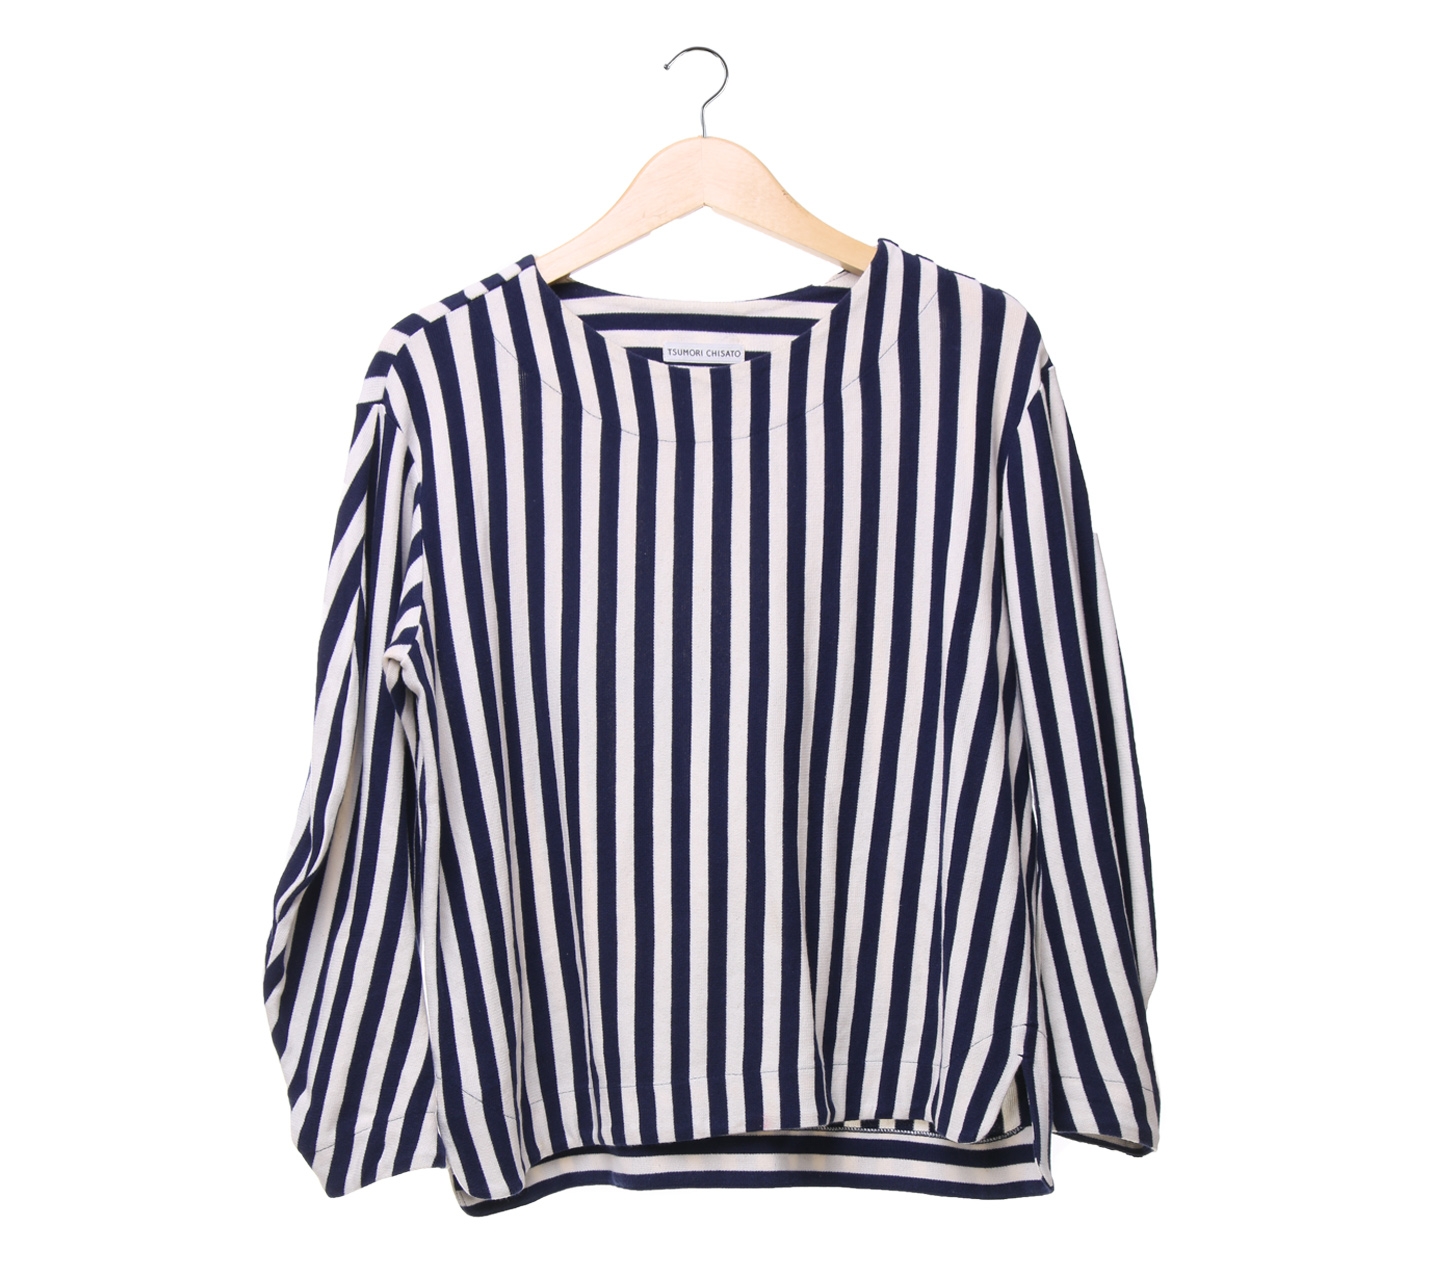 Tsumori chisato navy off white striped blouse